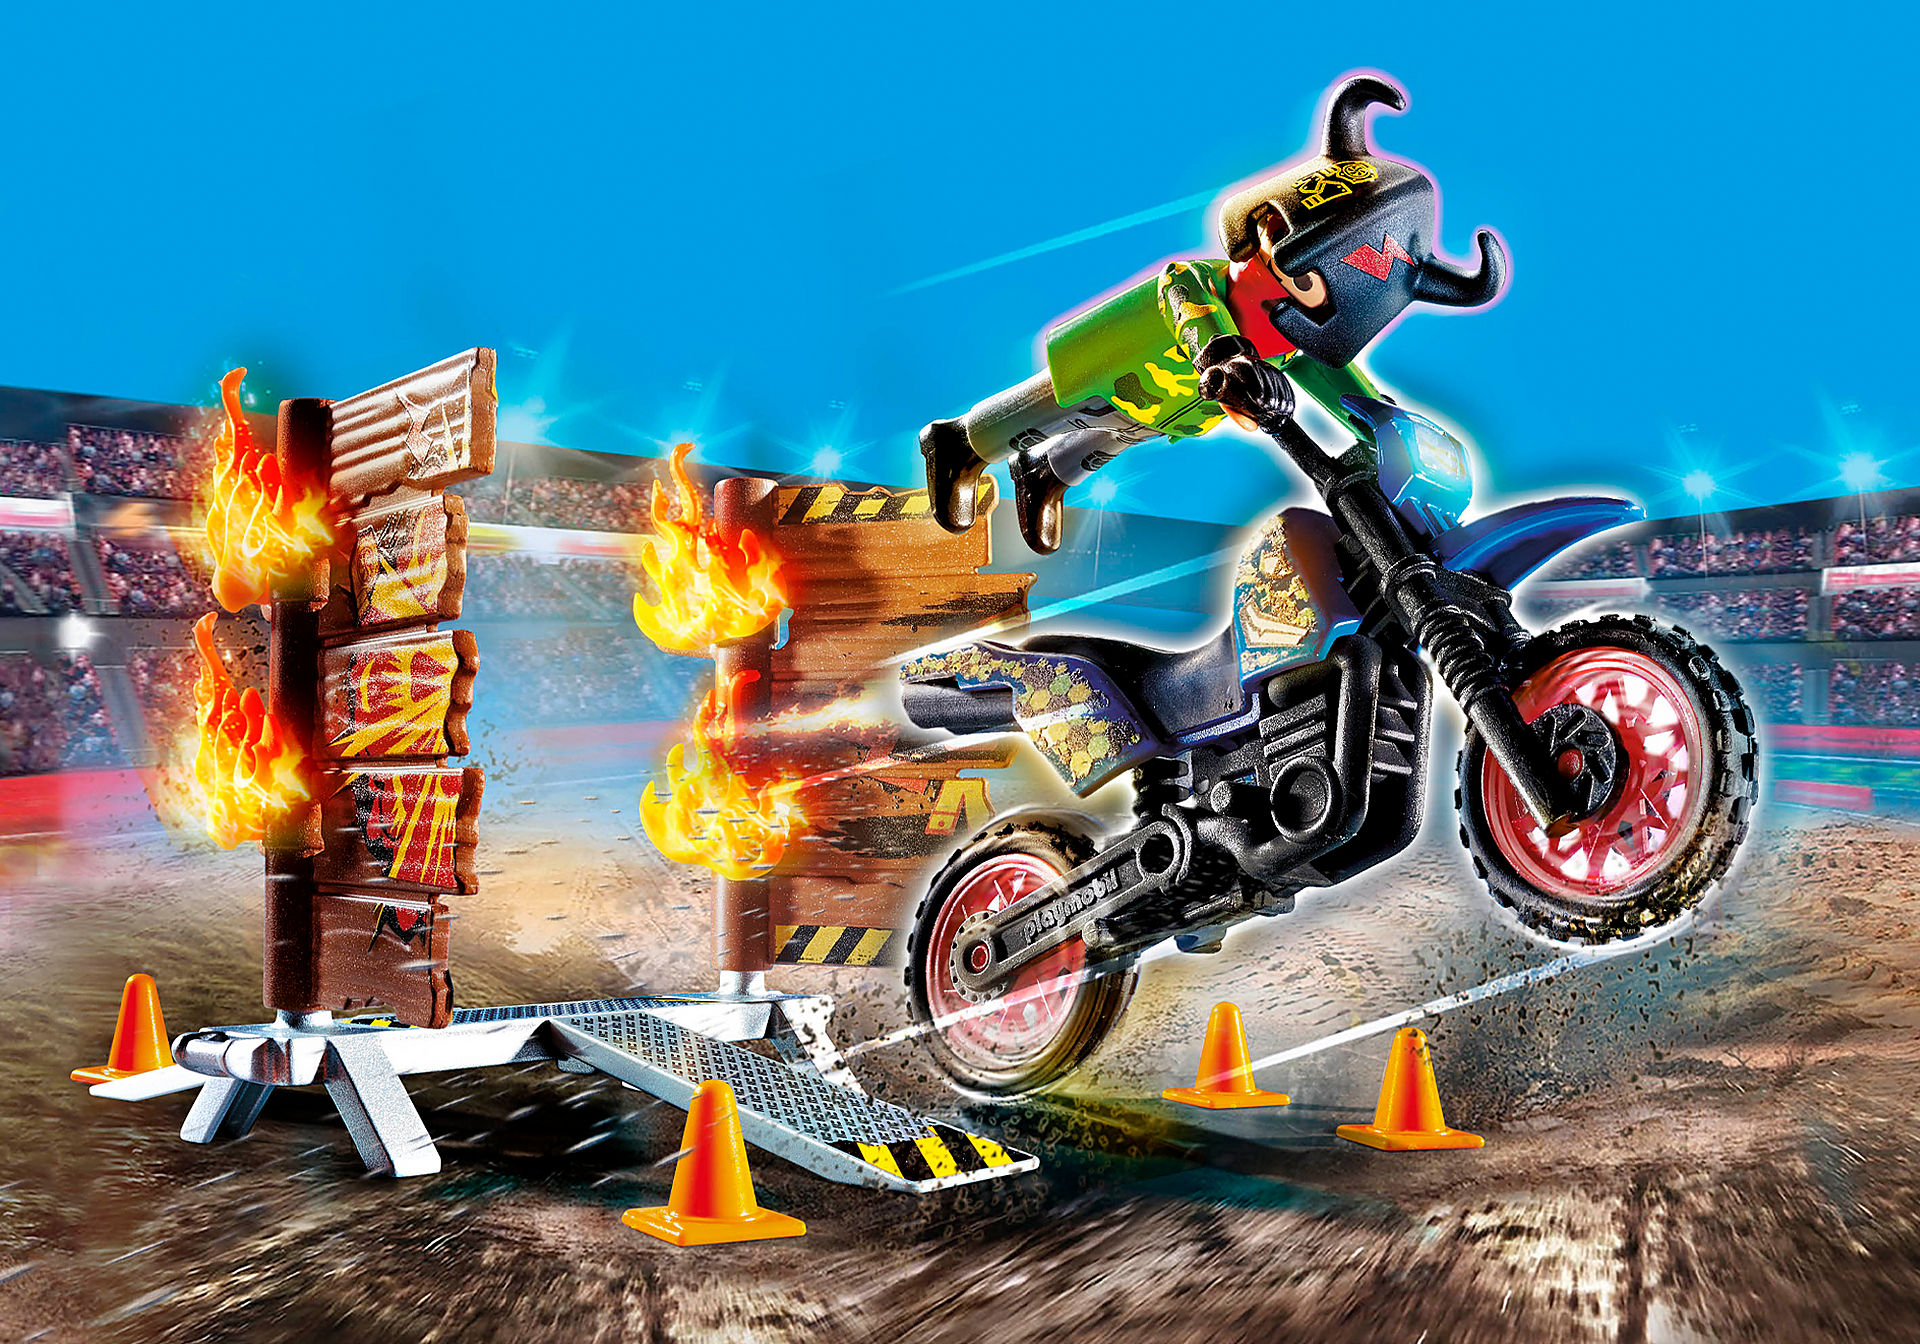 70553 Stuntshow Moto con muro de fuego zoom image1